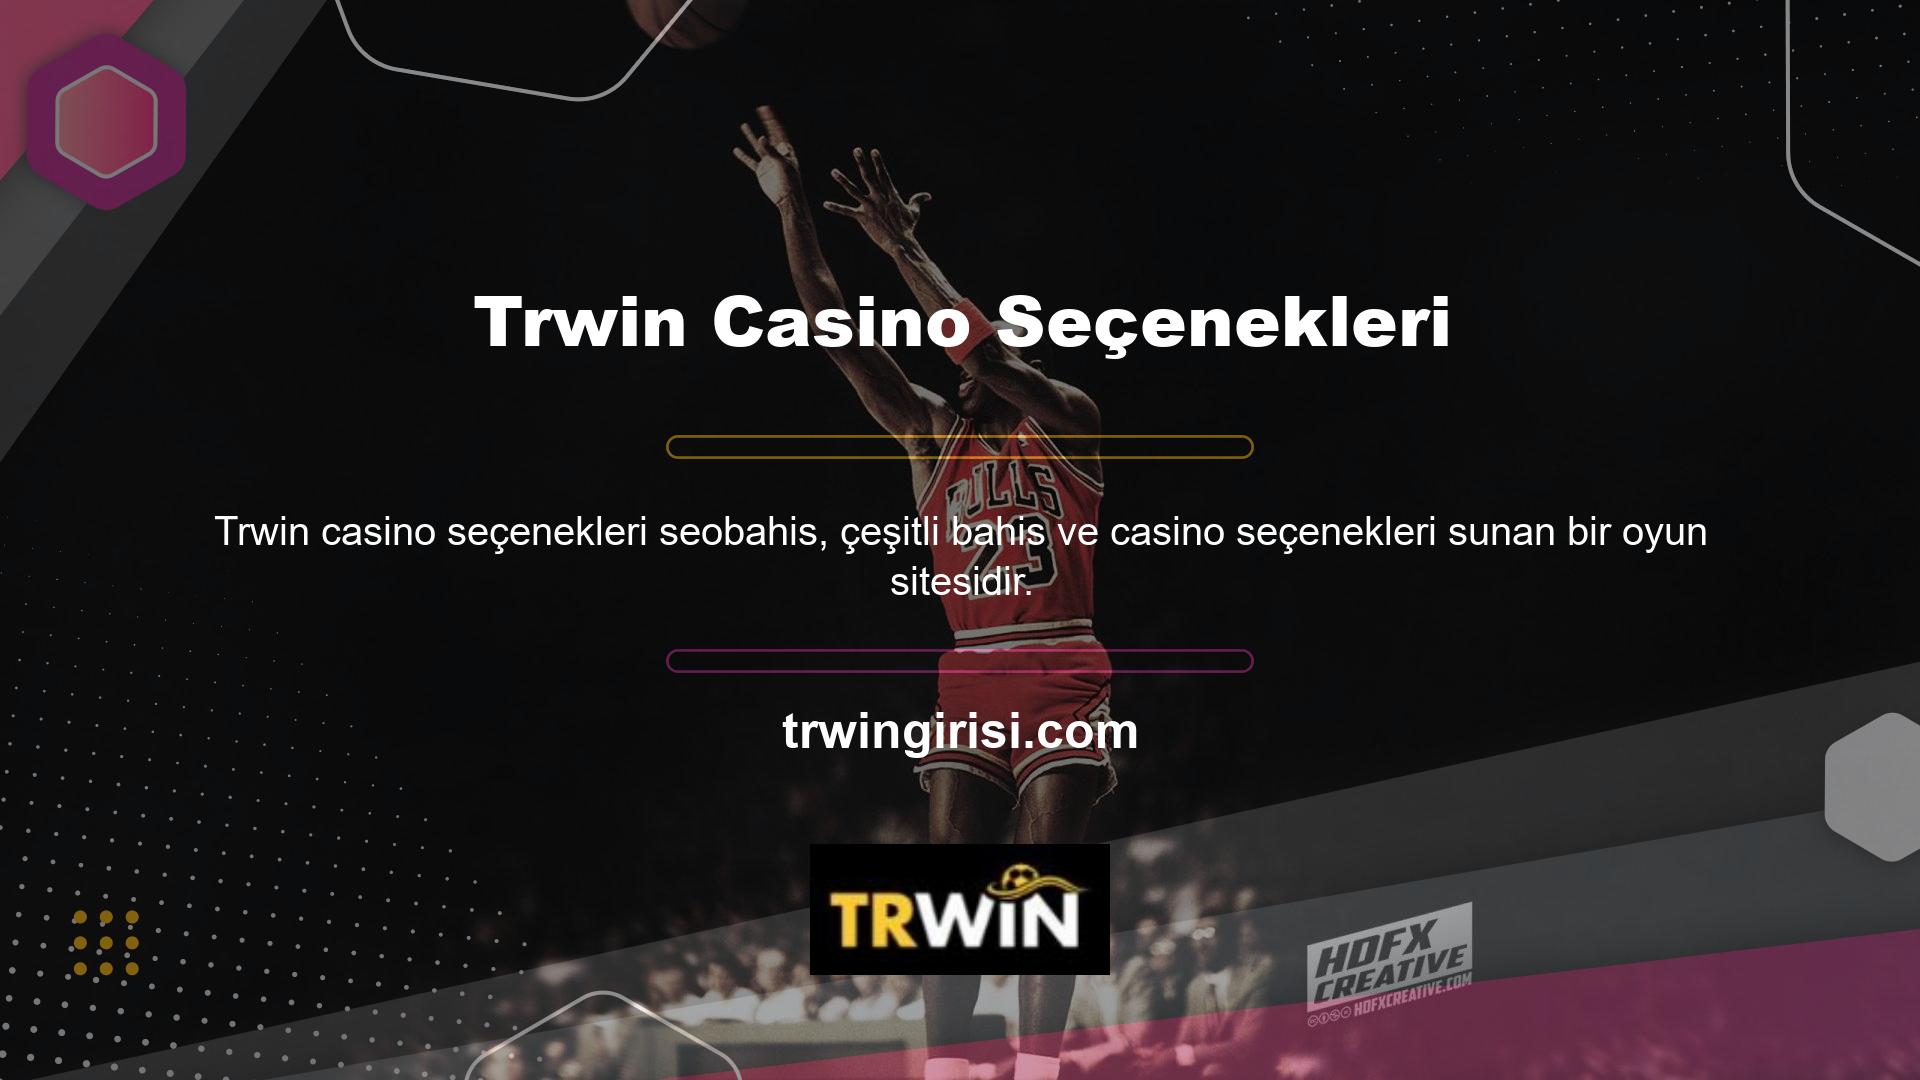 Trwin, Türkiye'deki lansmanından bu yana çok sayıda oyuncuyu çekme konusunda bir geçmişe sahip olup hem casino hem de casino alanlarında faaliyet göstermektedir